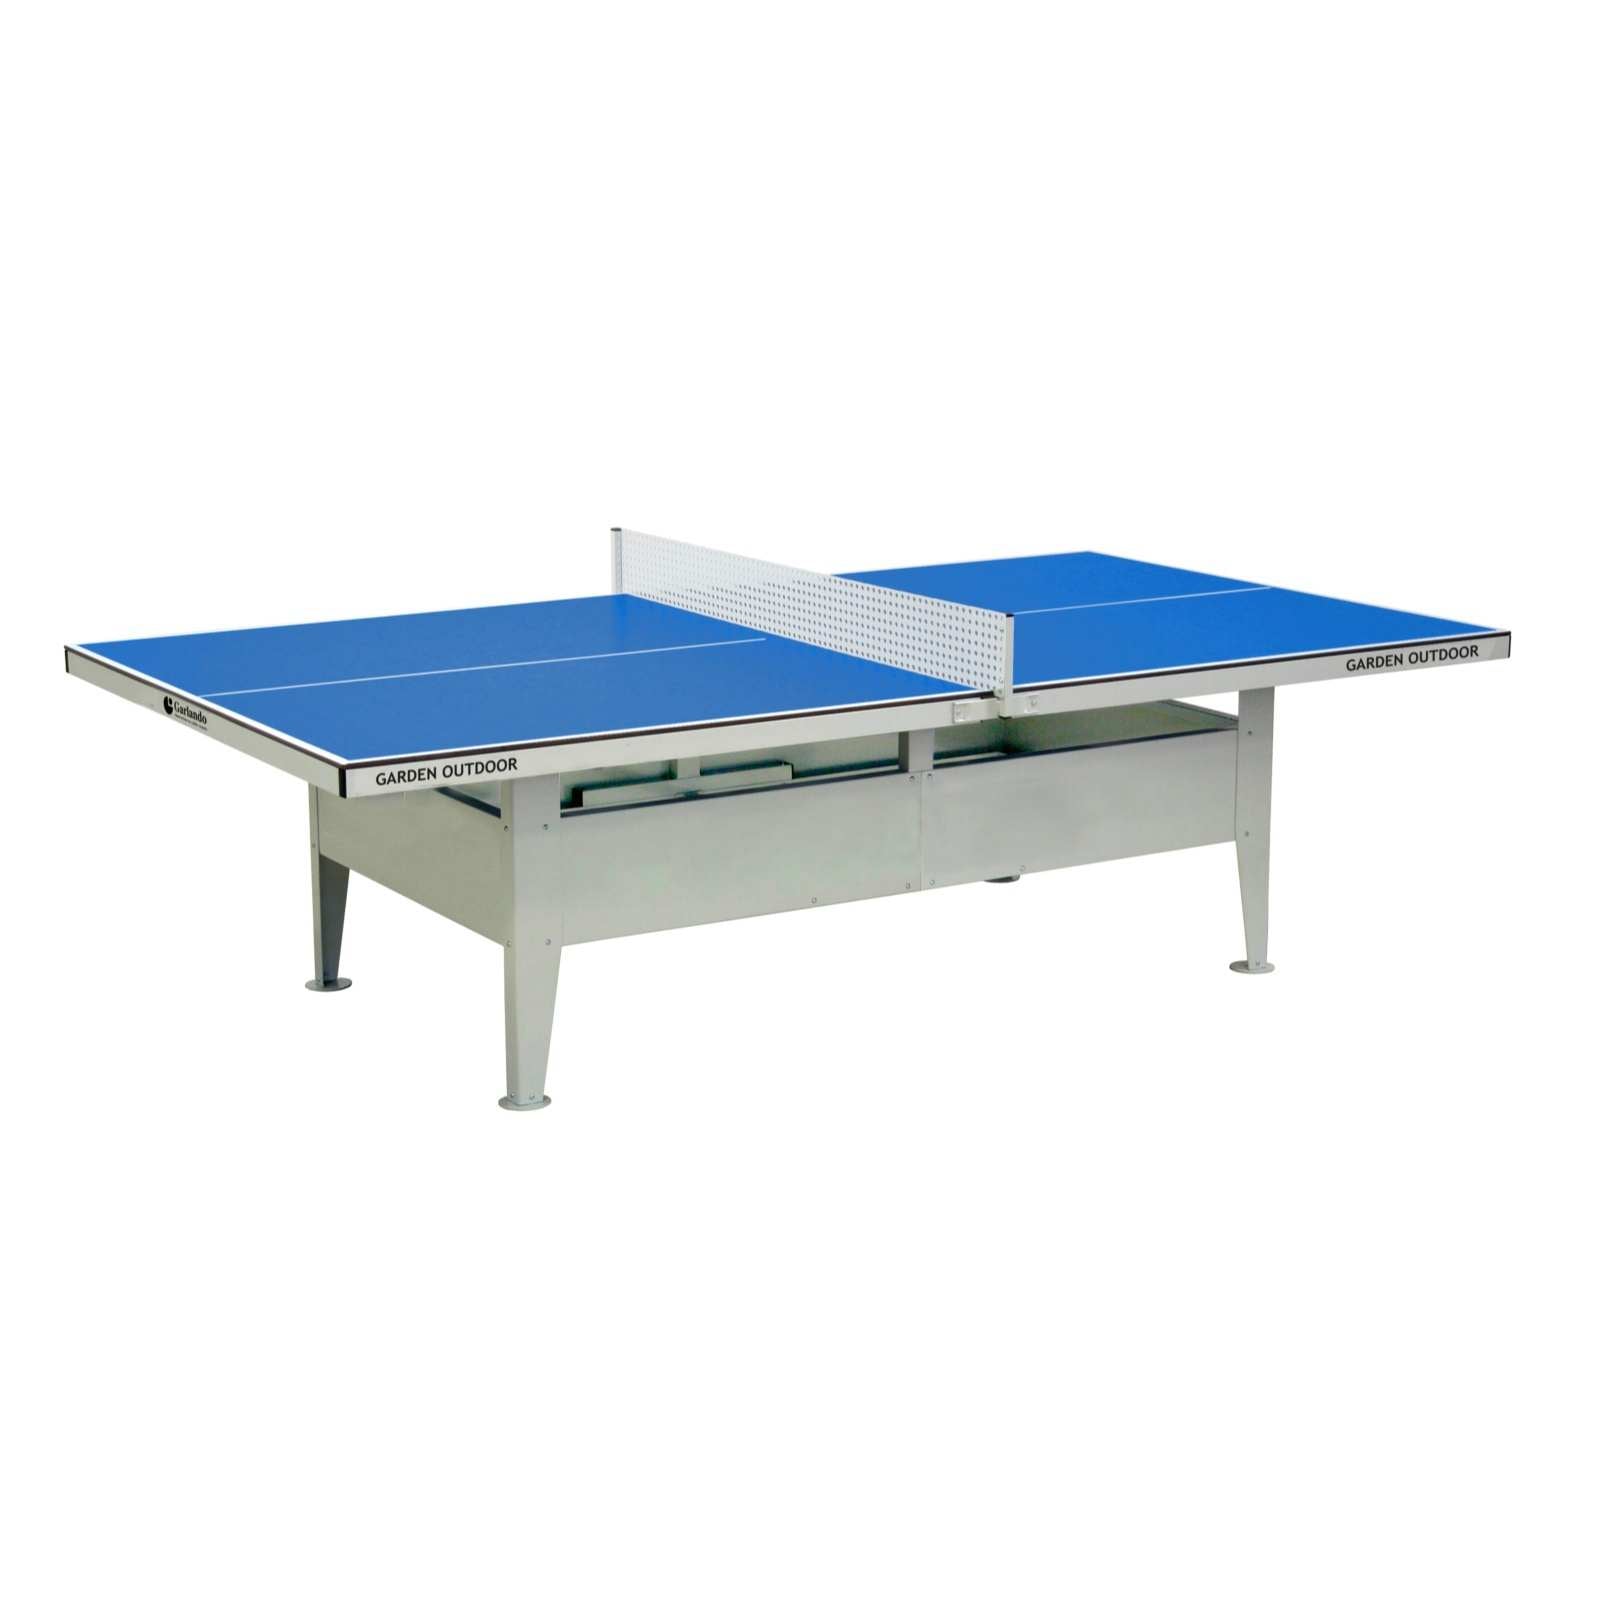 Garden Outdoor - Tavolo Ping Pong da Esterno Estremamente Robusto - Alternativa ideale ai Ping Pong in Cemento